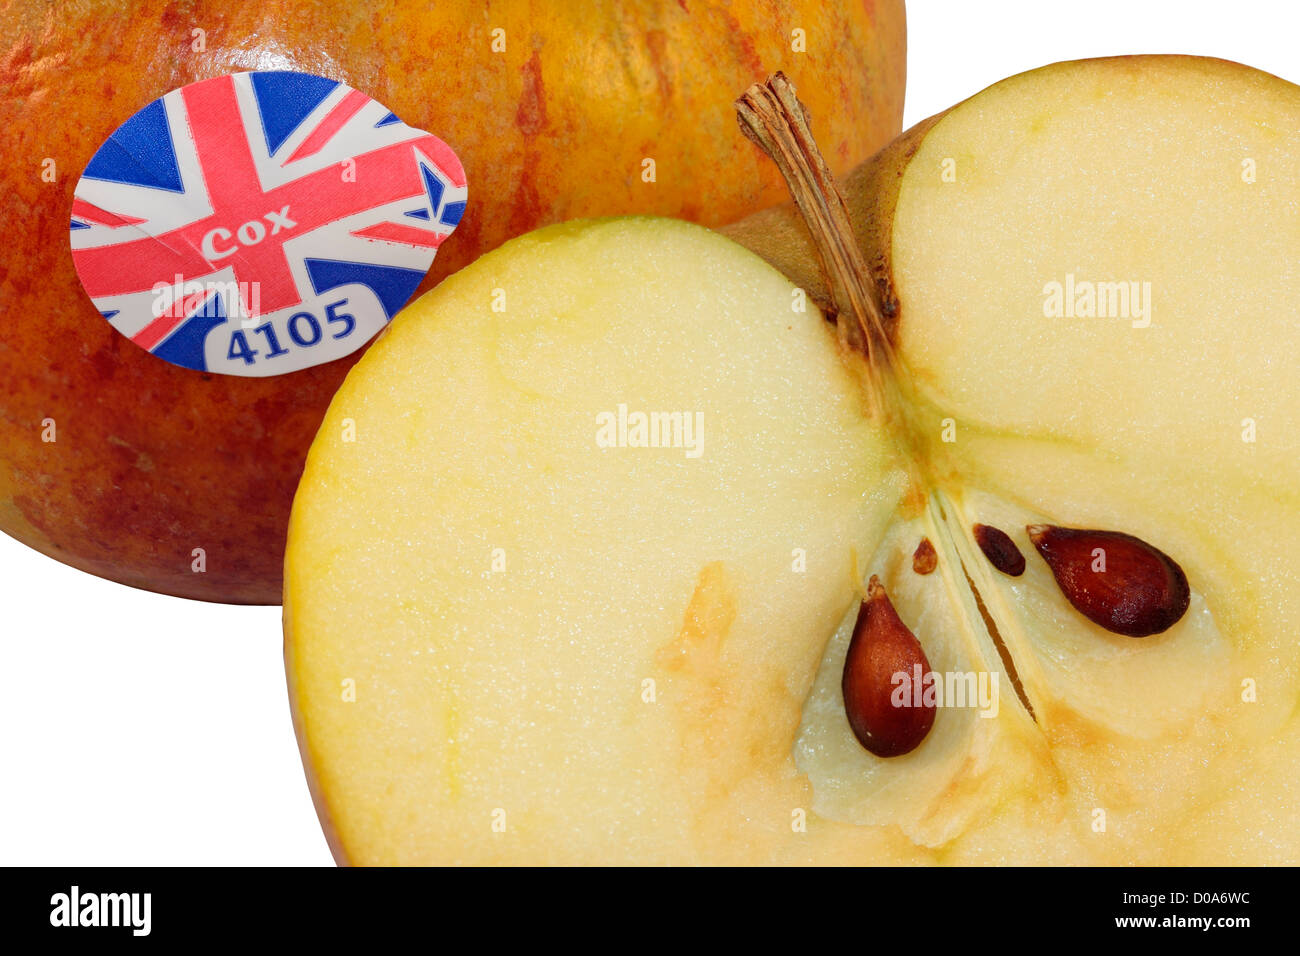 Ein einhalb Cox Äpfel einen Apfel schneide ich Hälfte Samen isoliert auf weißem Hintergrund zeigen. Stockfoto